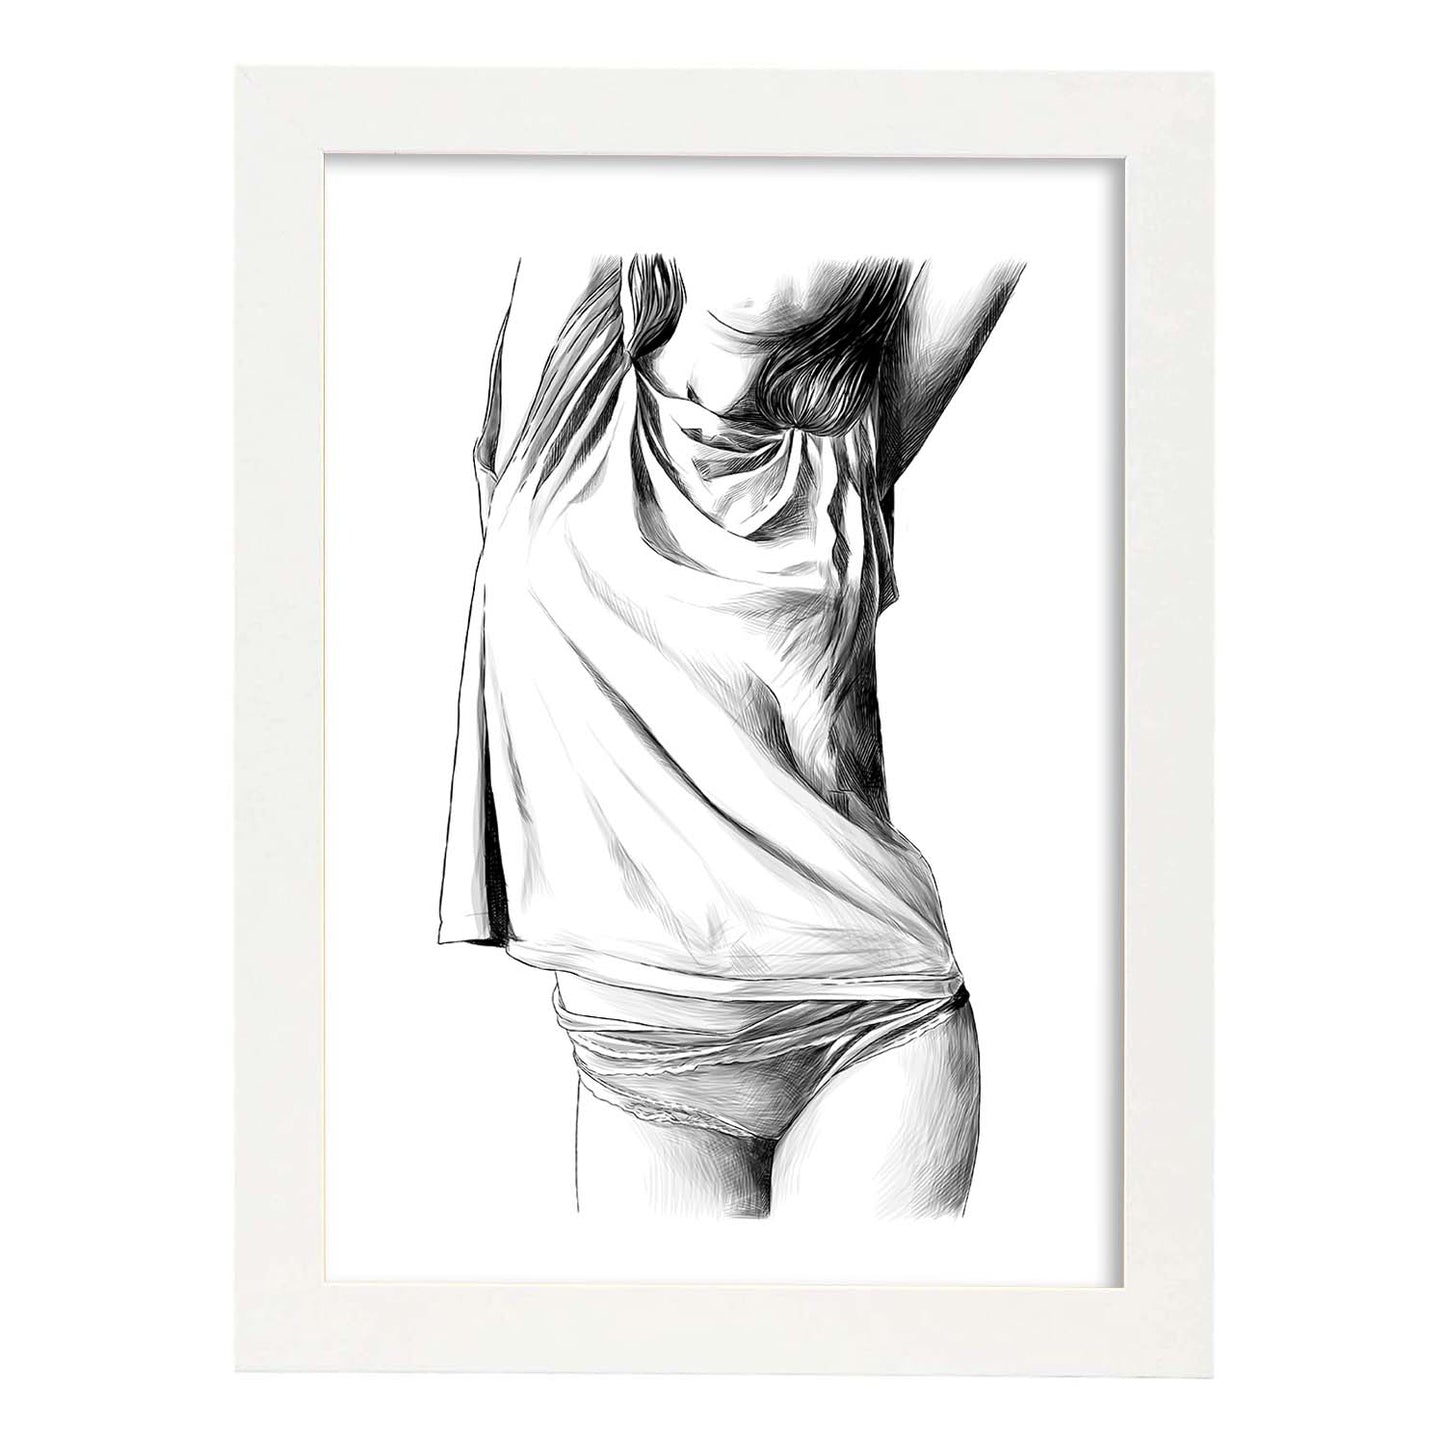 Posters eróticos. Lámina Frontal 1 dibujada con imágenes sensuales del cuerpo femenino.-Artwork-Nacnic-A3-Marco Blanco-Nacnic Estudio SL